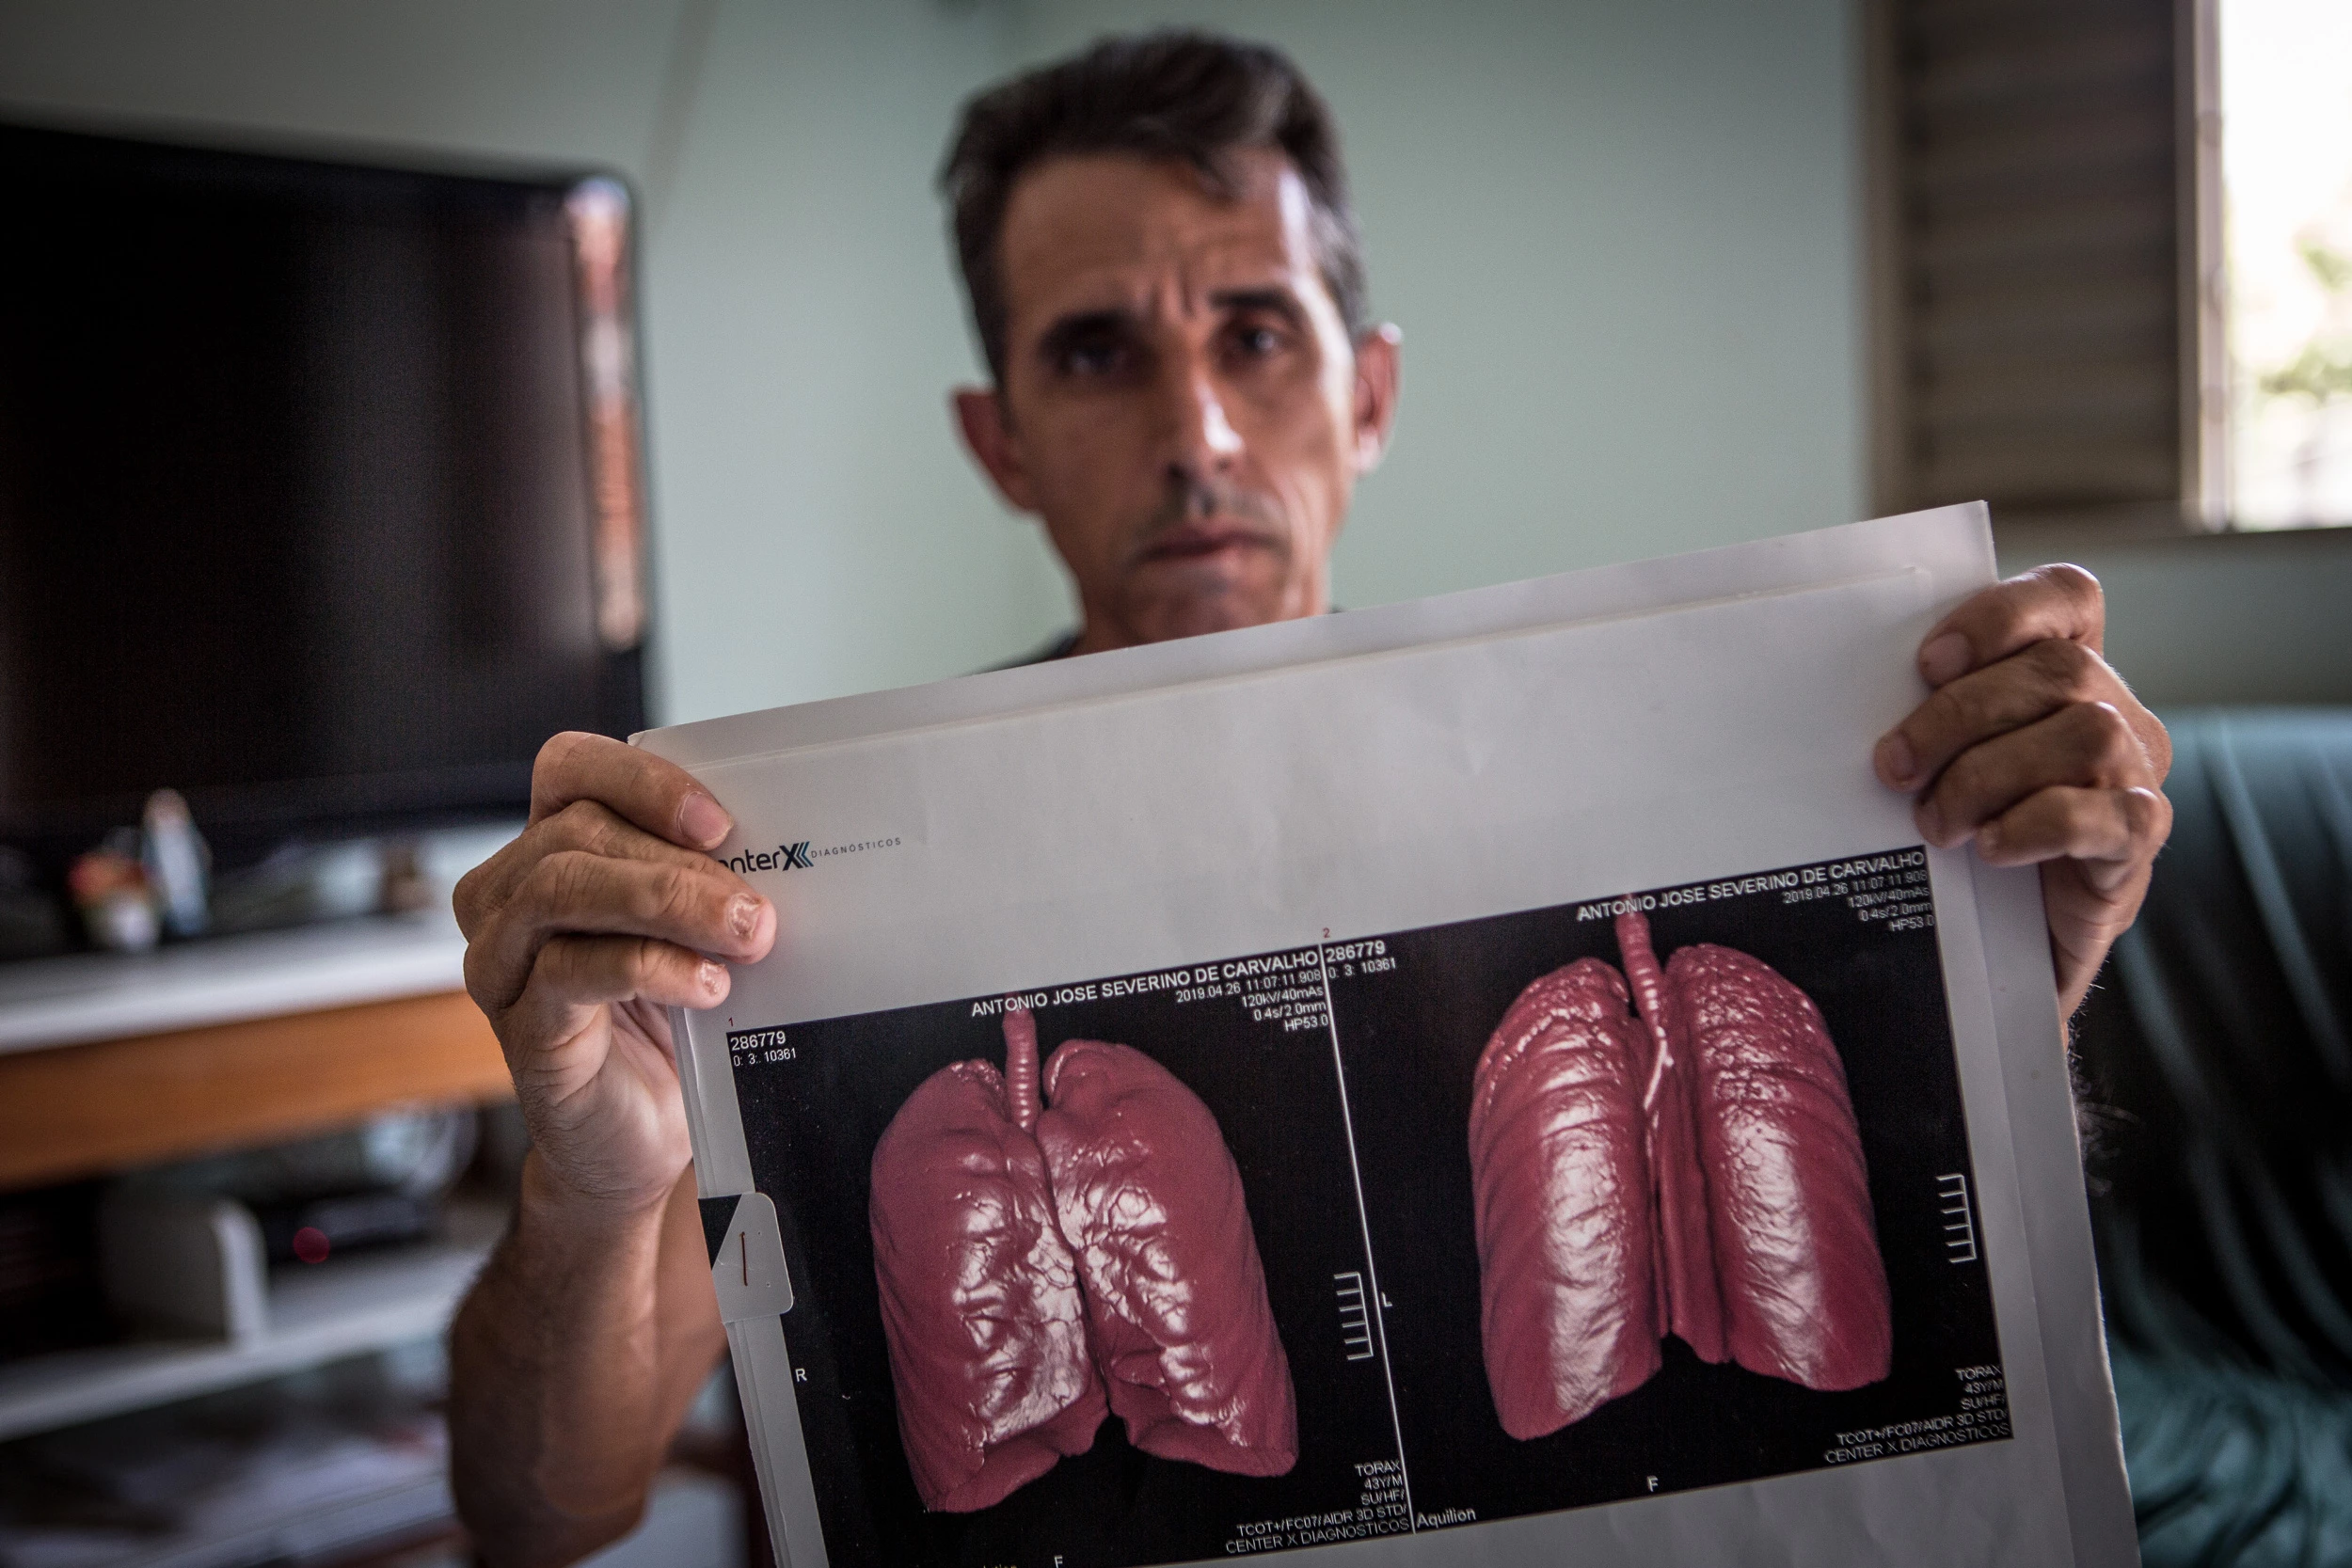 Antonio José Severino de Carvalho, de 44 anos, ex funcionário da mineradora Sama, mostra seus exames mostrando resultados da abestose em seus pulmões. Antonio trabalhou na Sama por 11 anos e 8 meses.